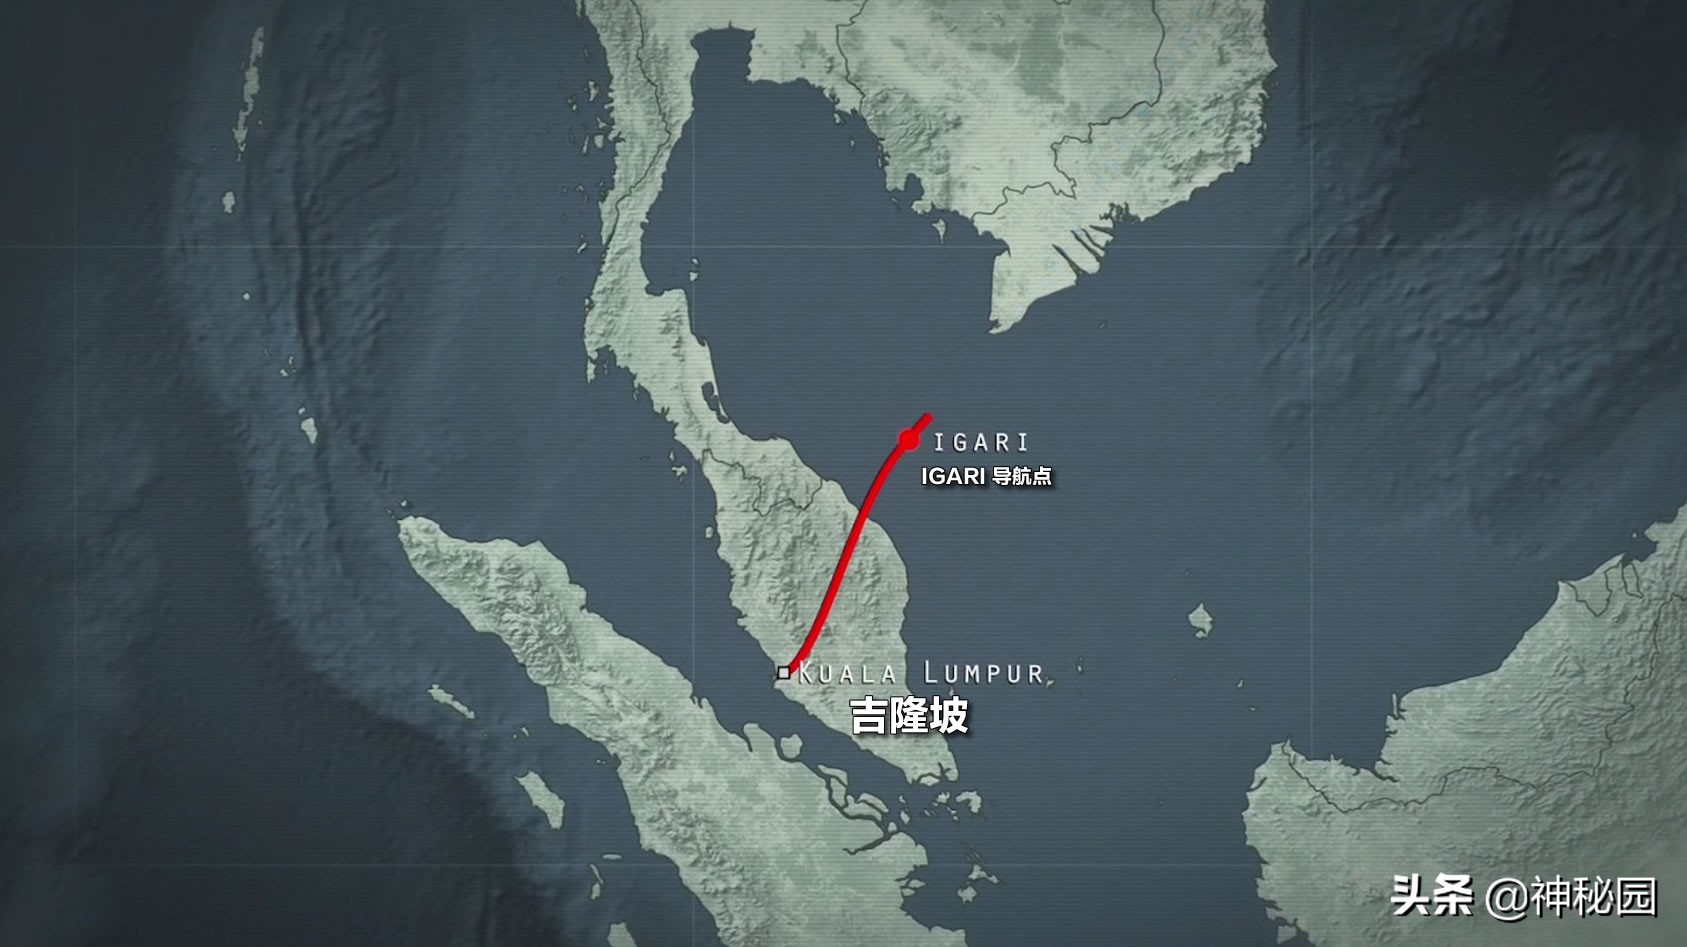 纪录片《MH370 消失的马航客机》上线 Netflix